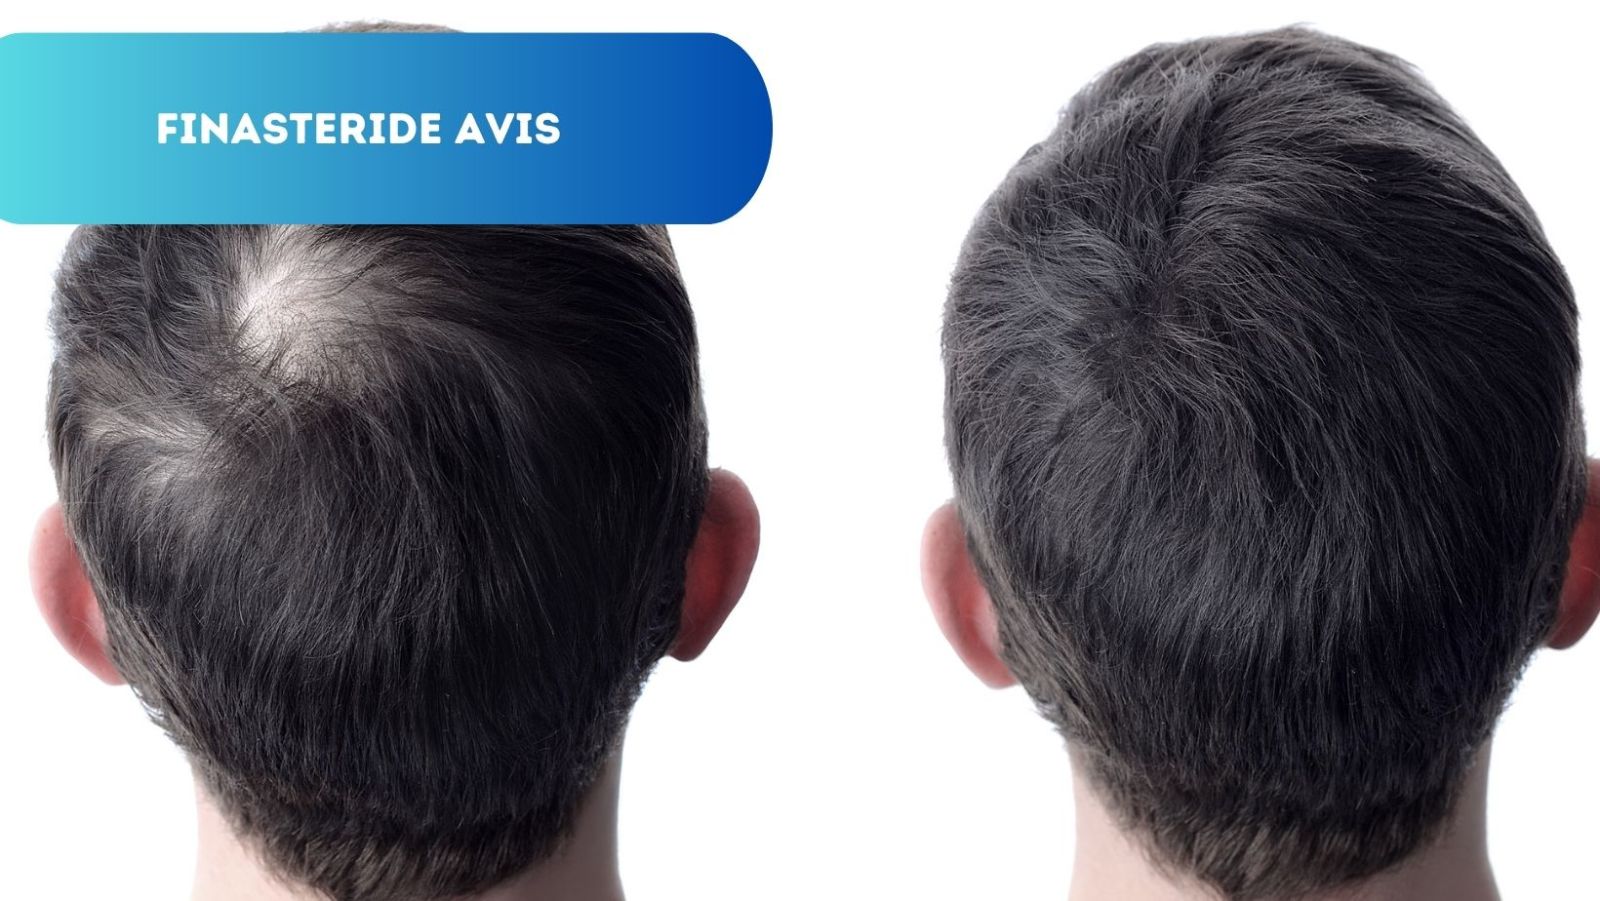 Avis Finastéride: Solution Efficace contre la Chute de Cheveux?